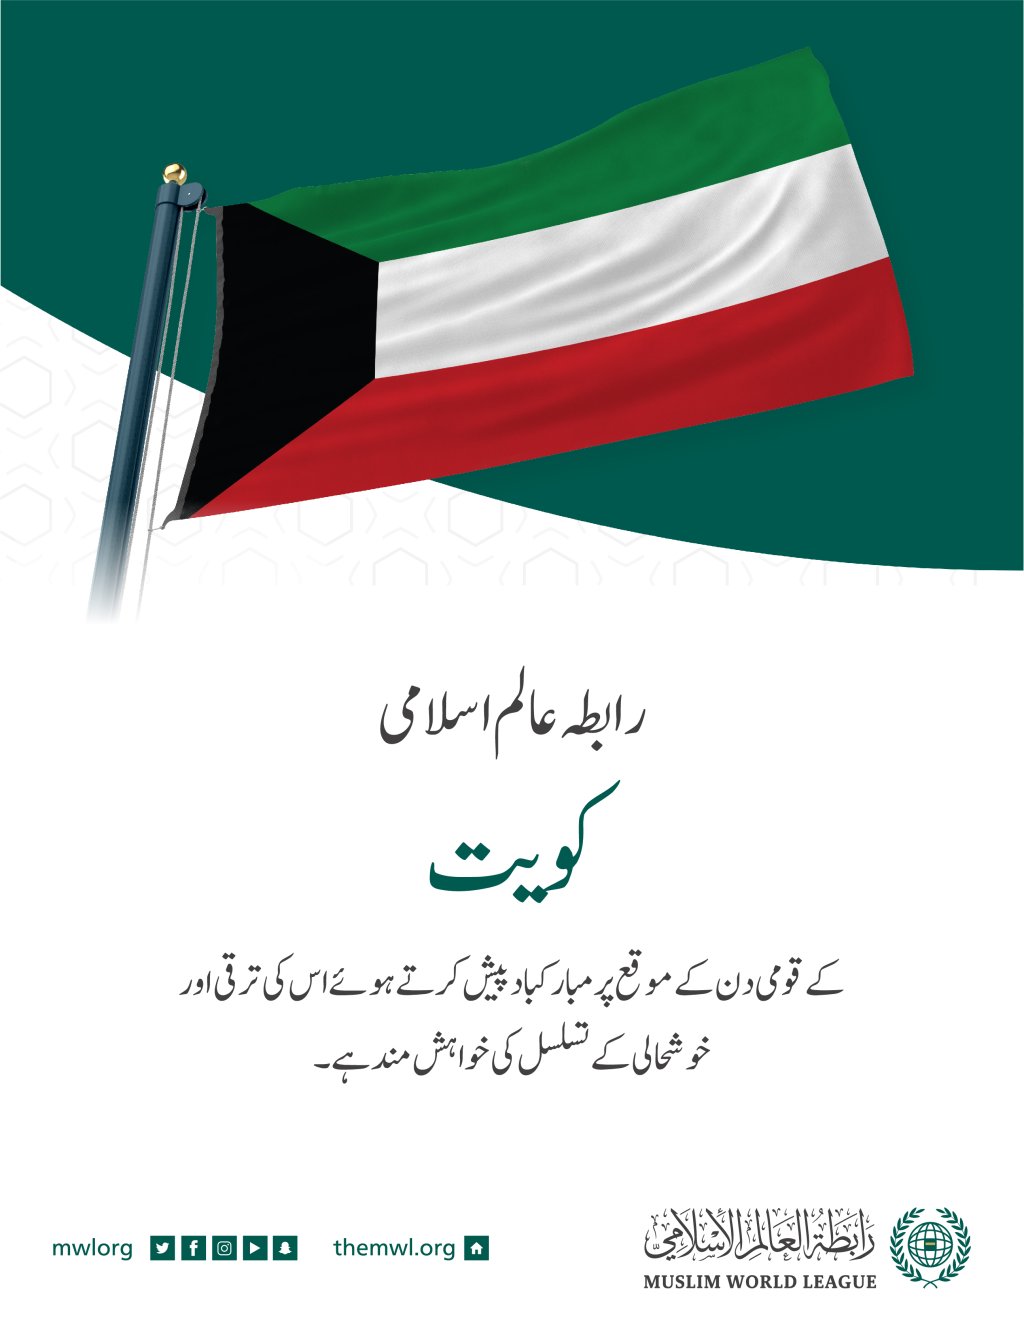 رابطہ عالم اسلامی کی جانب سے کویت کے قومی دن کے موقع پر مبارکباد کا پیغام: